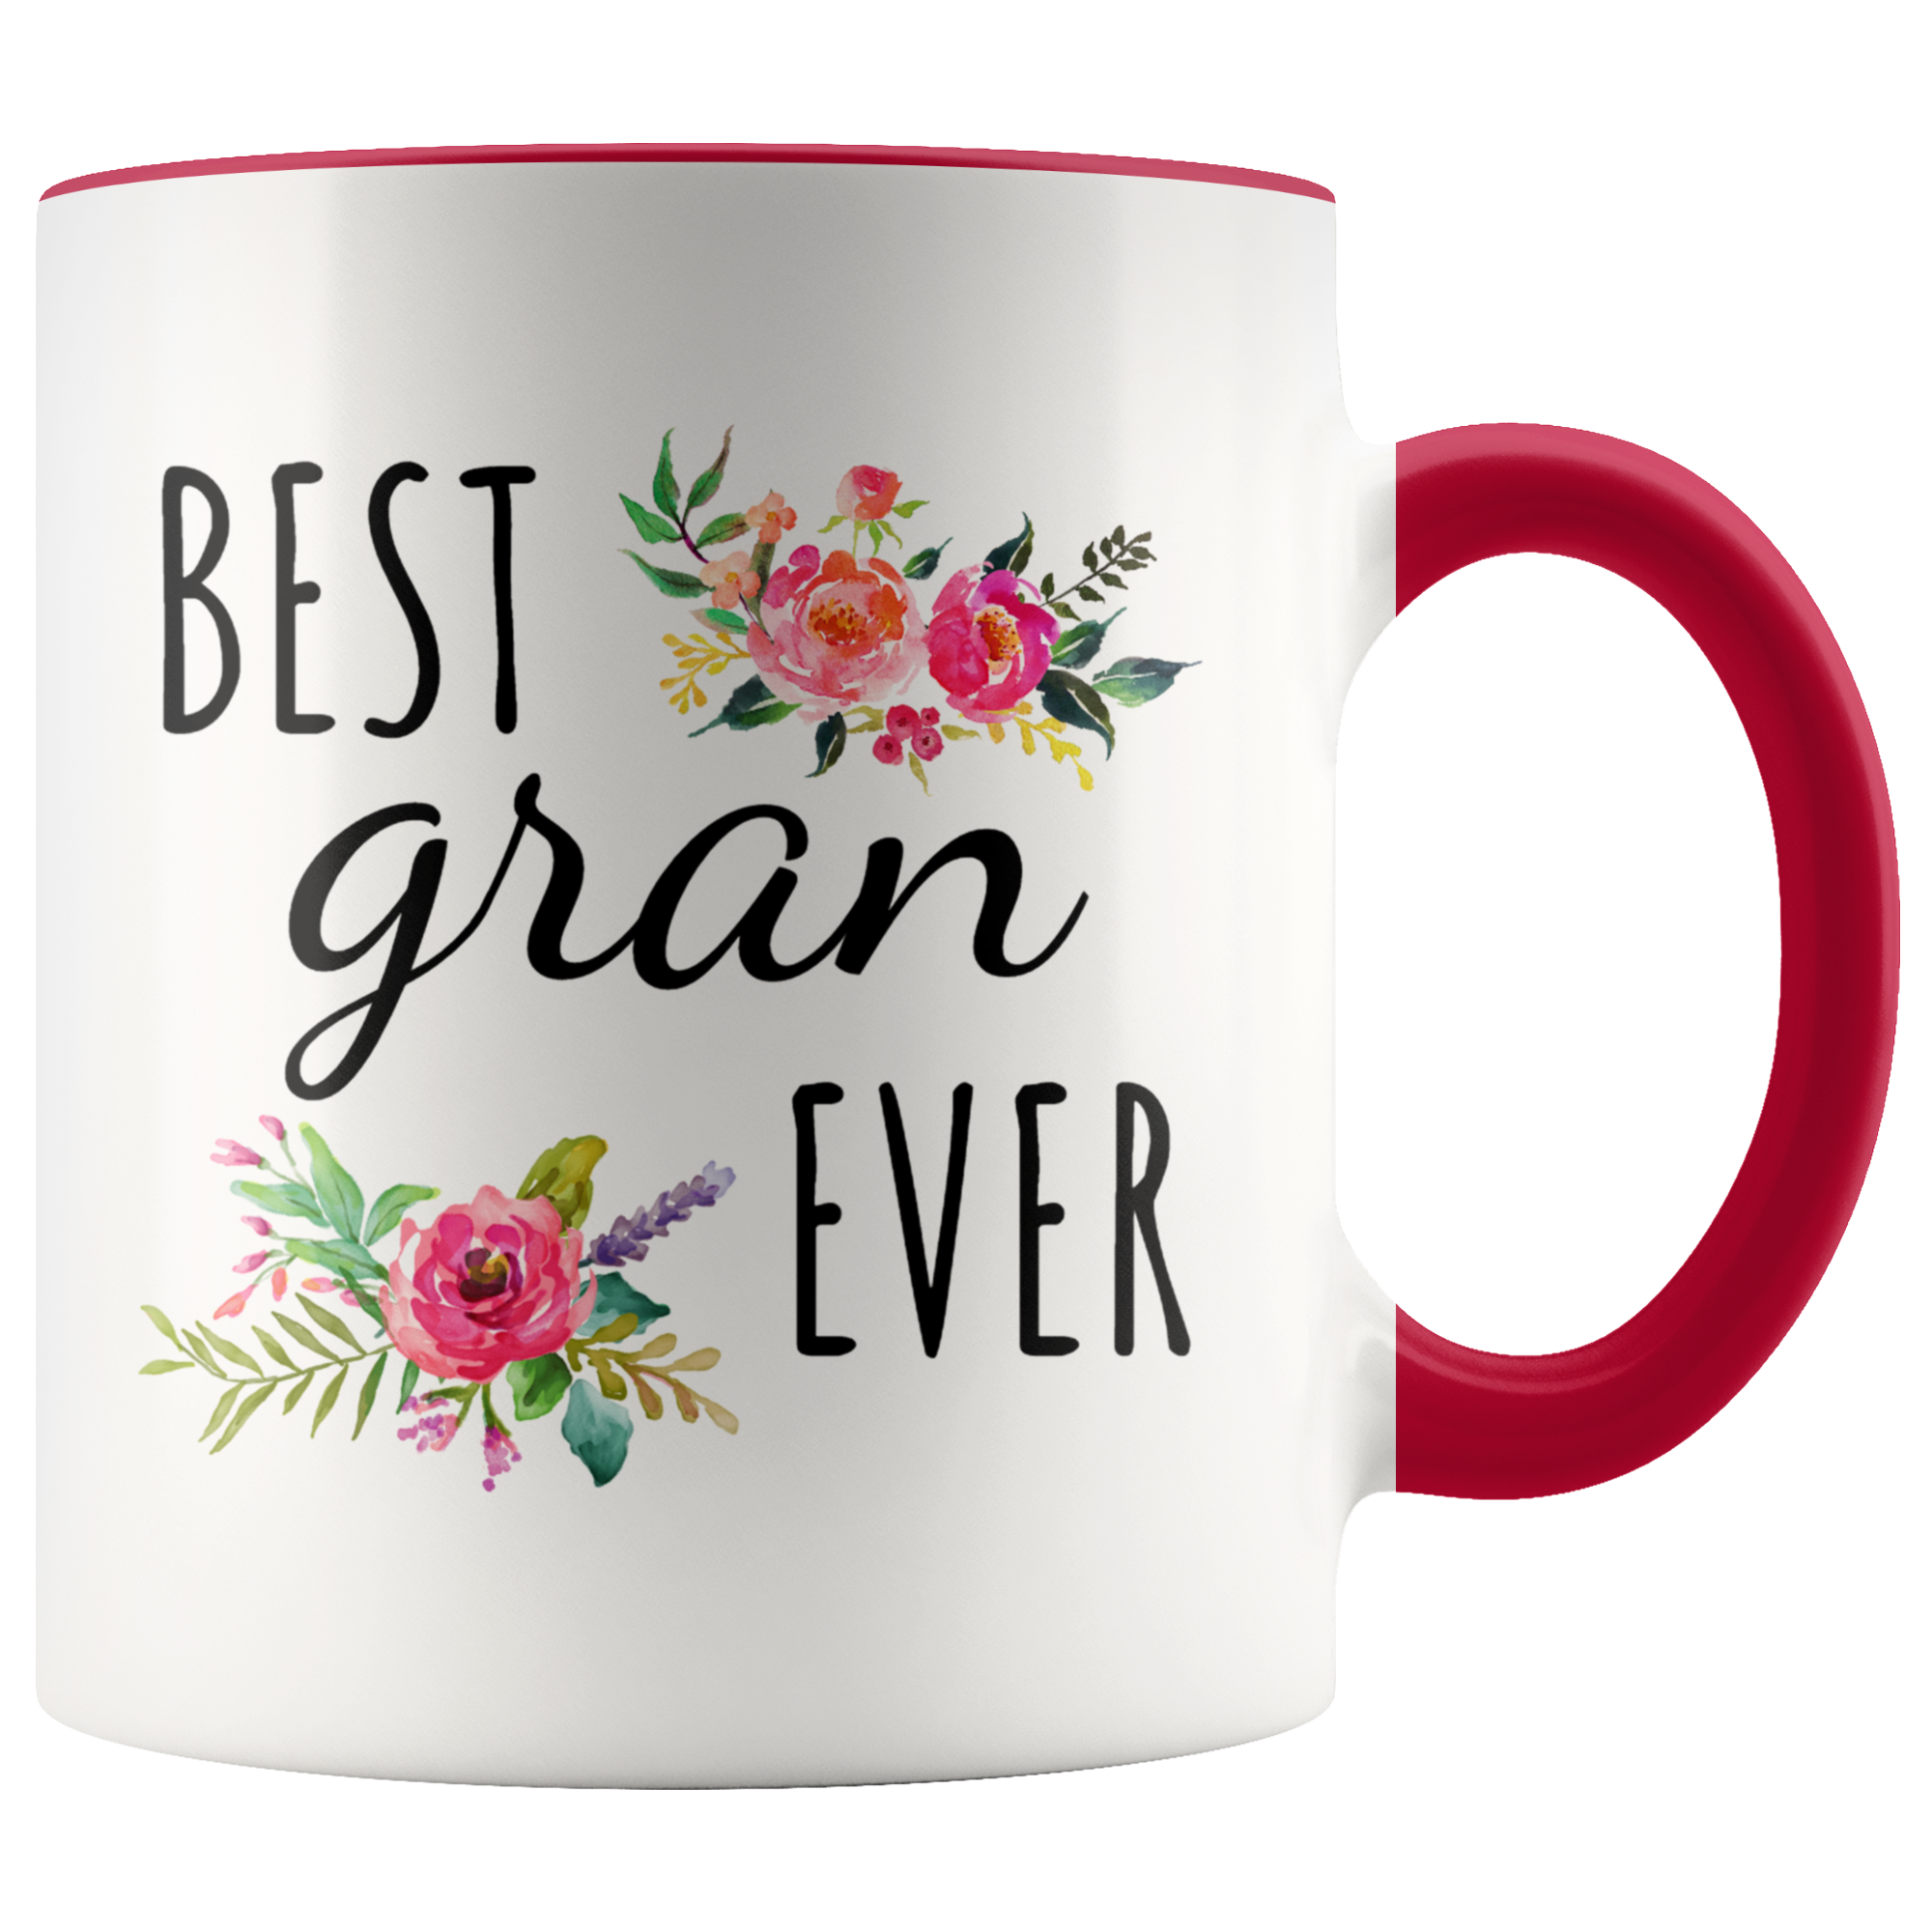 Best Gran Mug